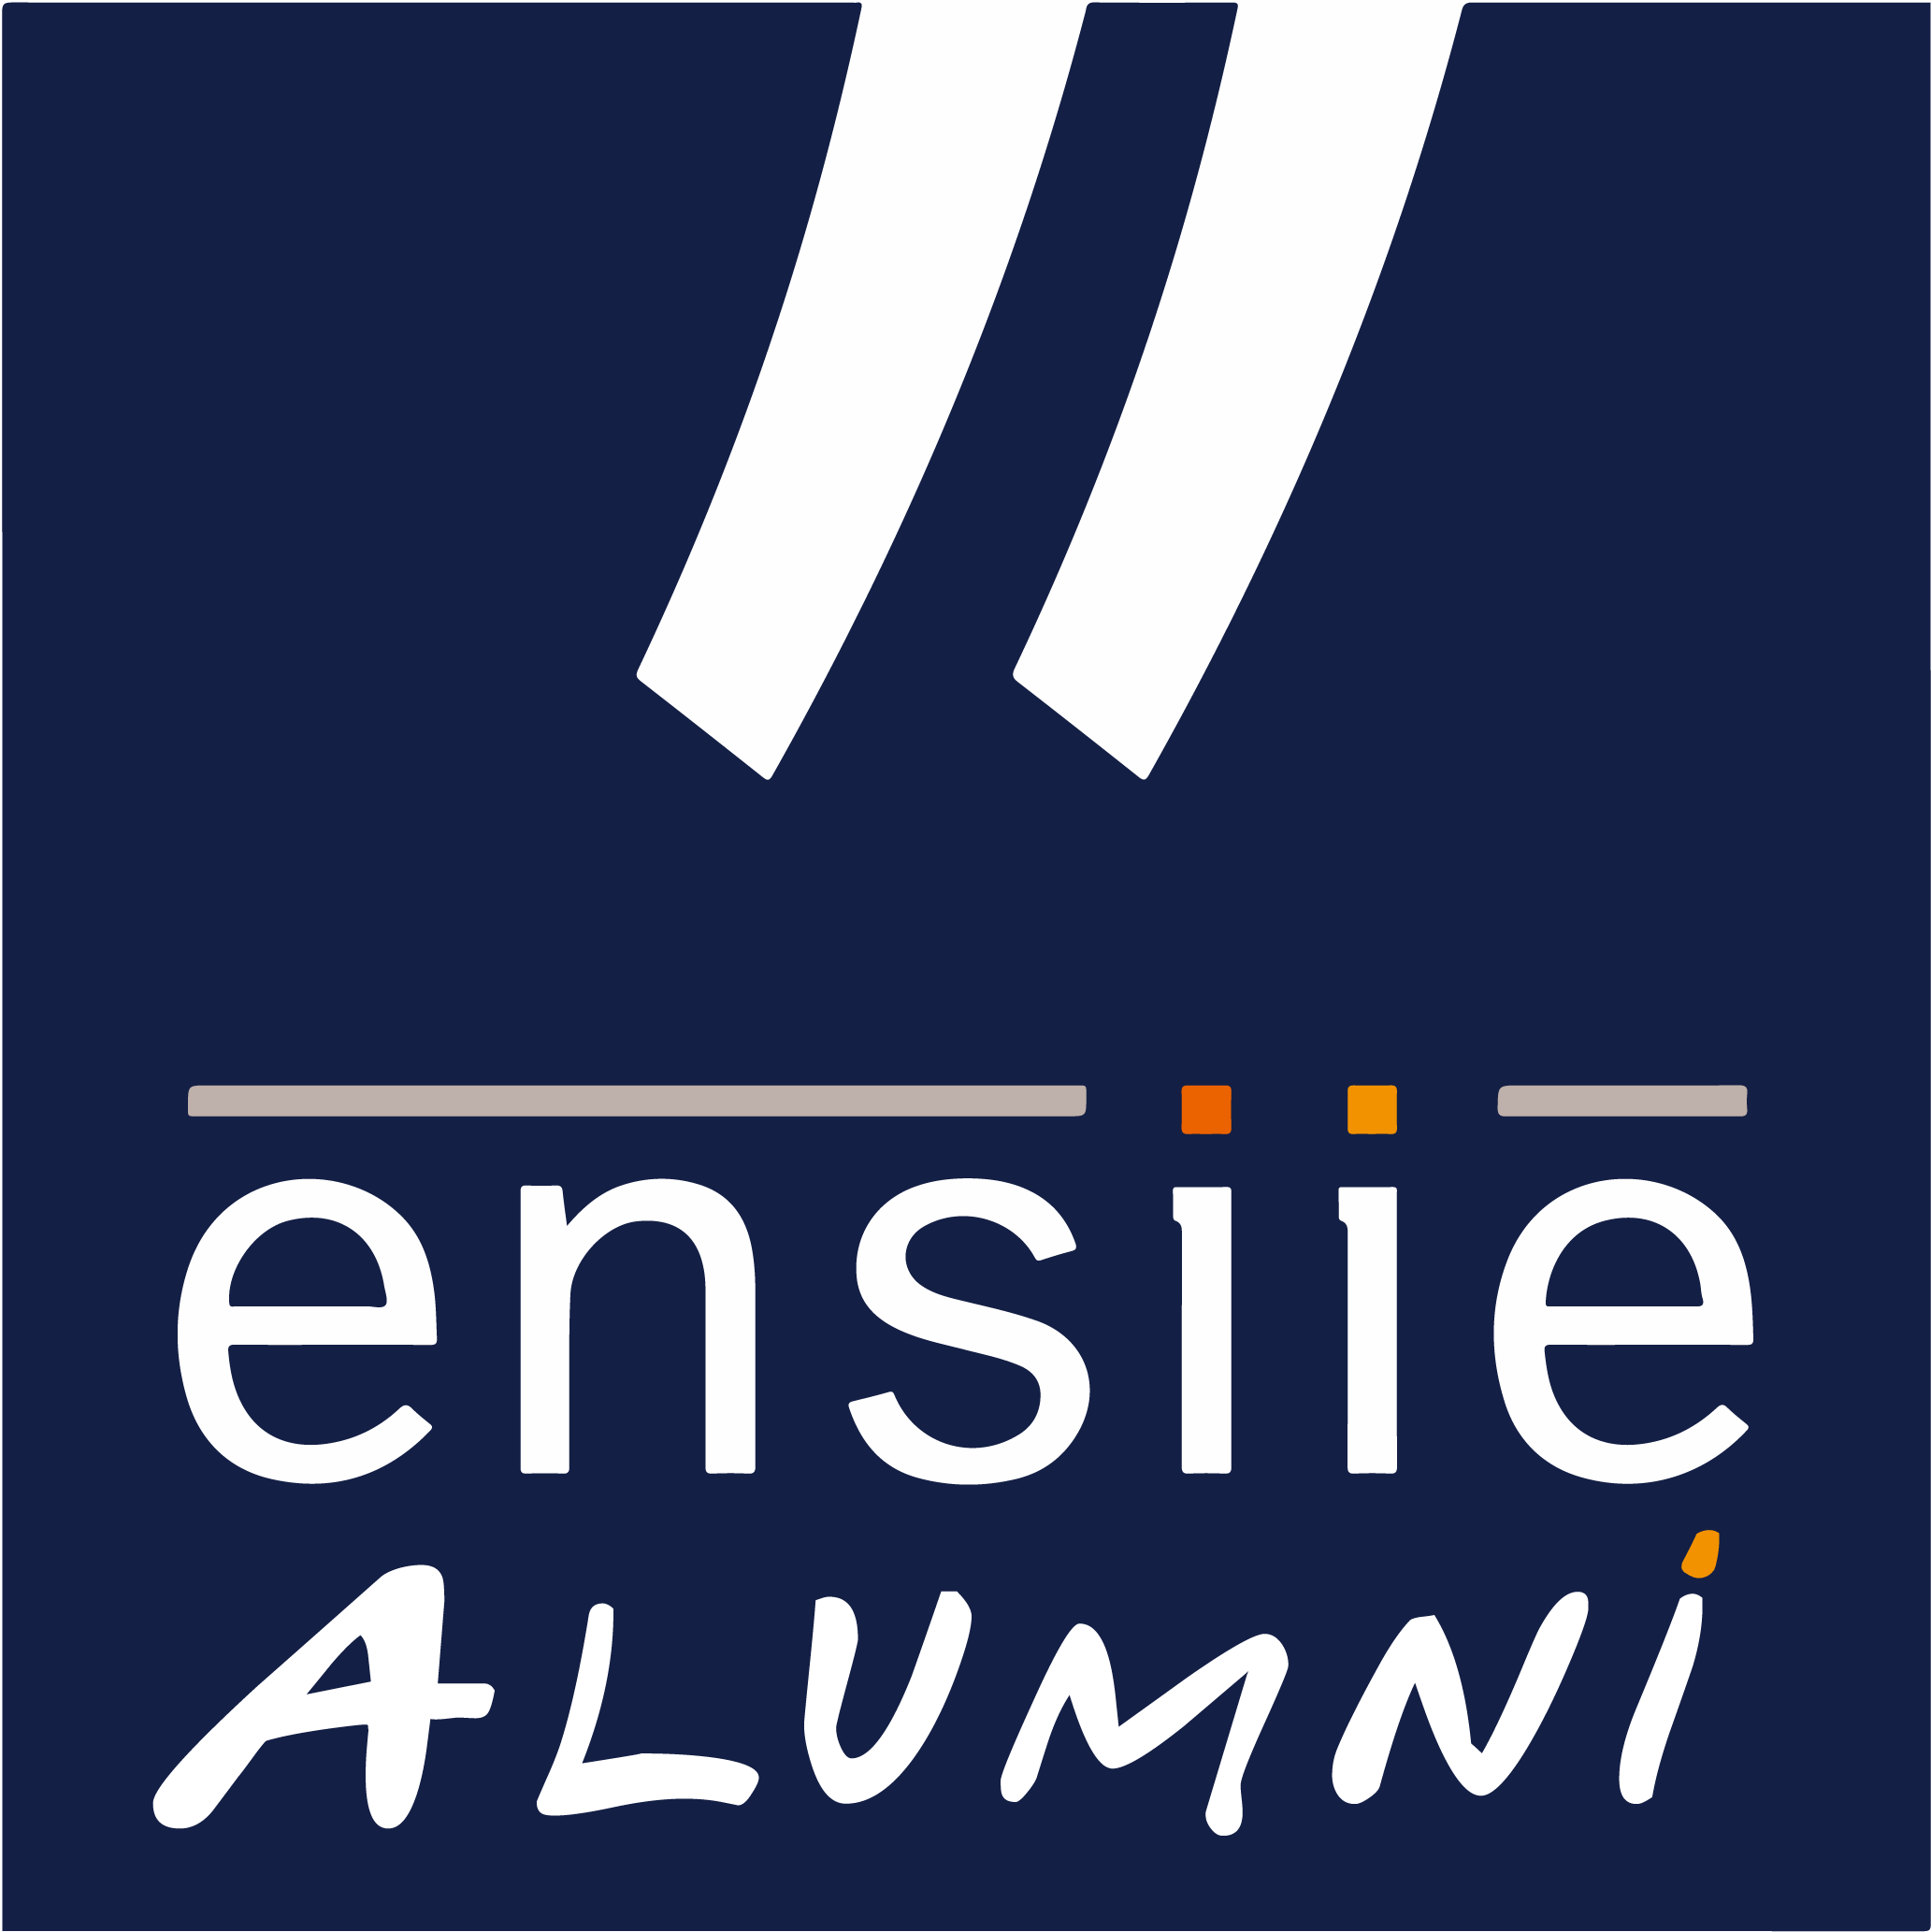 ENSIIE Alumni